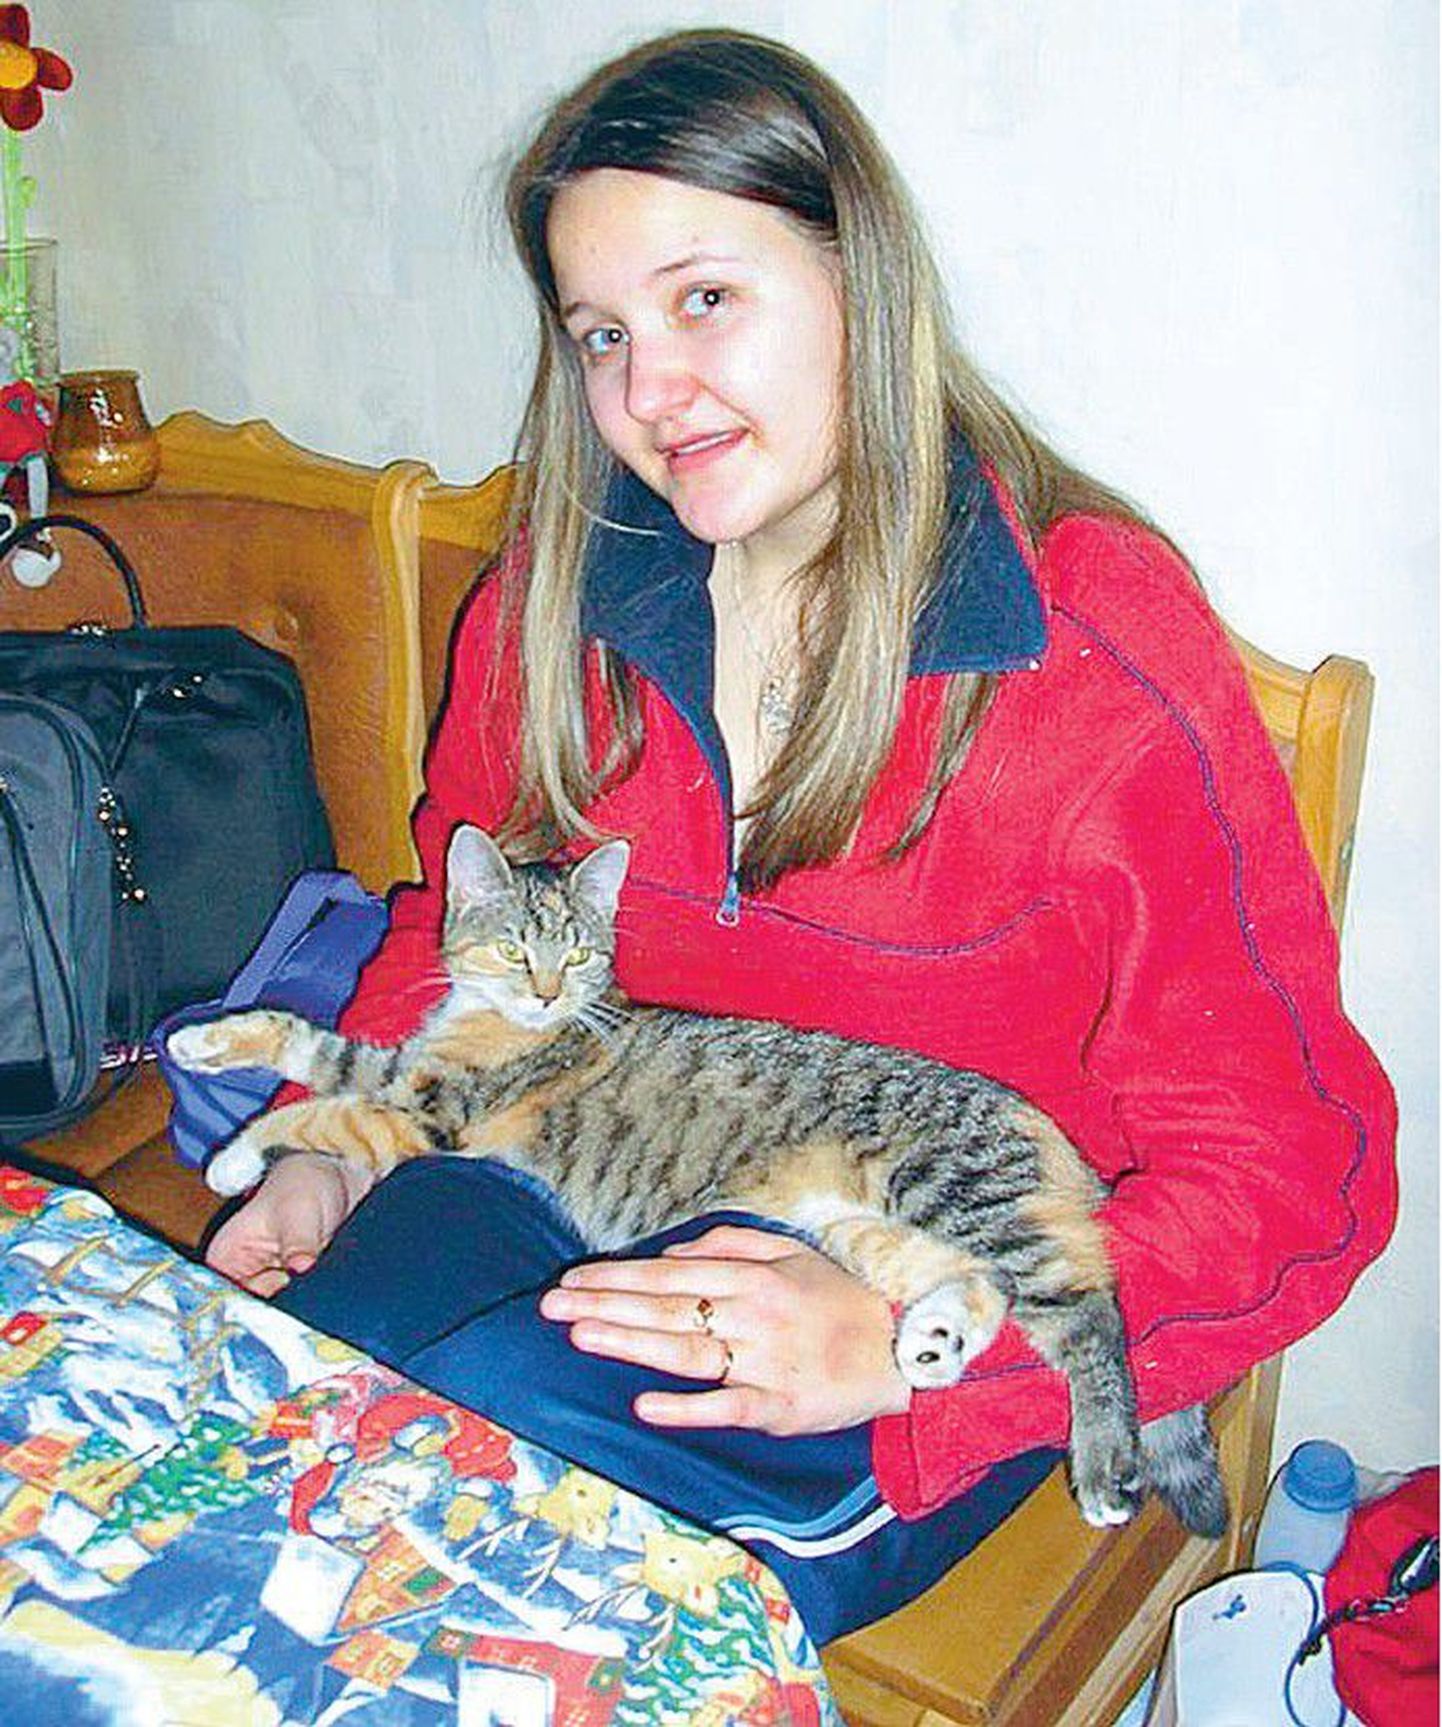 Oma noore elu viimastel kuudel leidis Merit endale lõpuks sõbra, kassipoja, kes temalt aga varsti ära võeti.